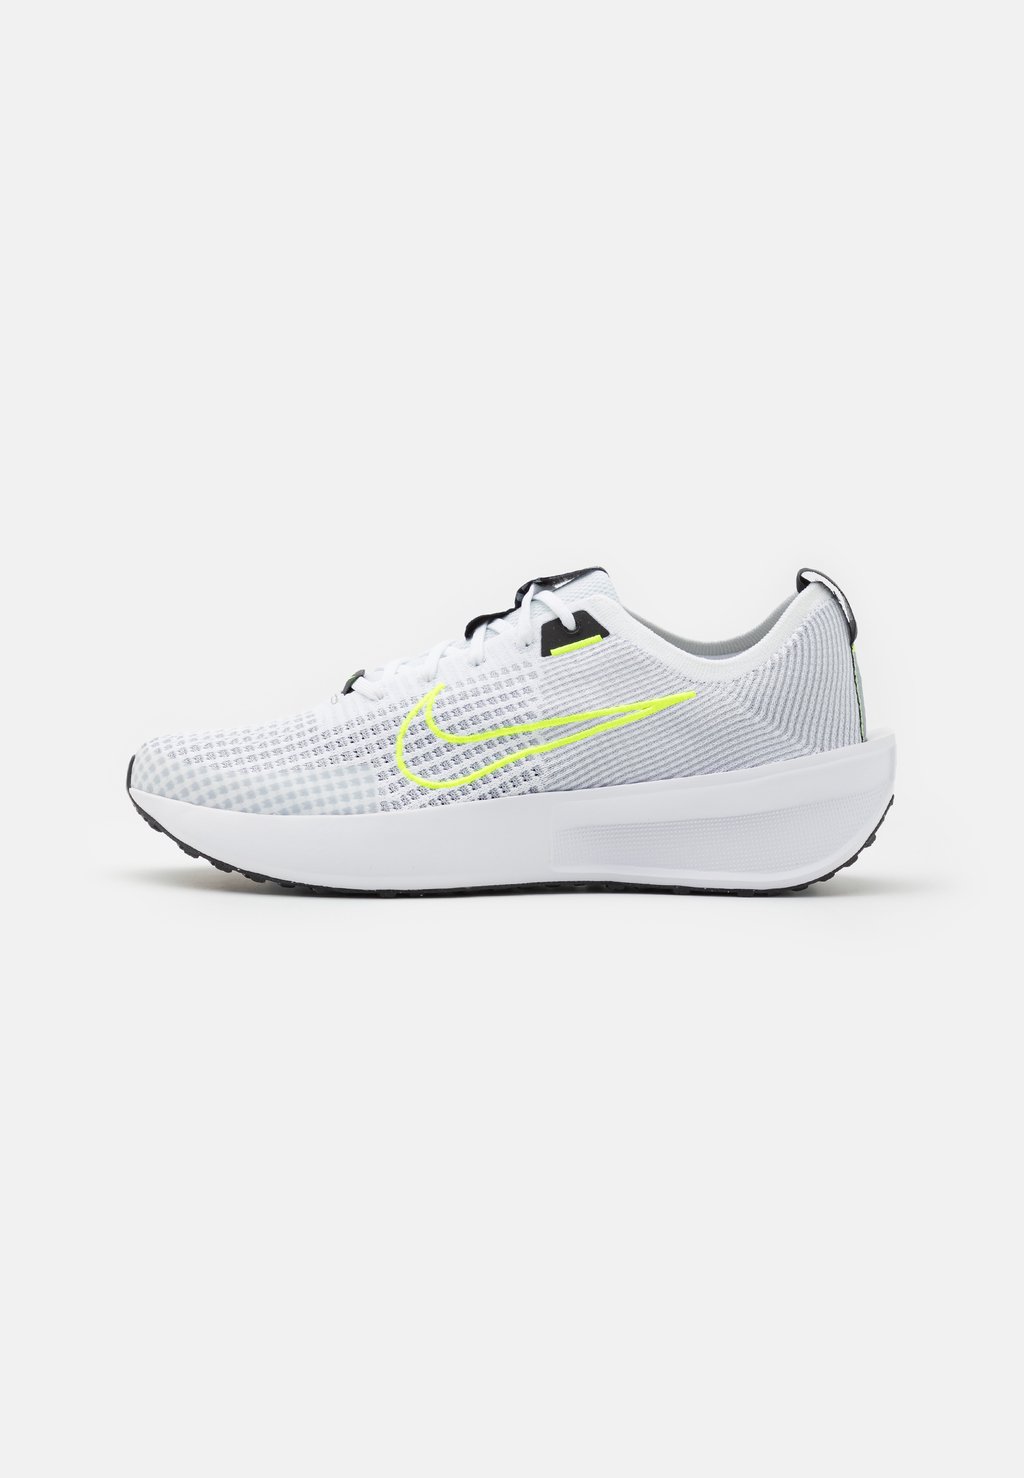 Нейтральные кроссовки Interact Run Nike, цвет white/volt/wolf grey/black